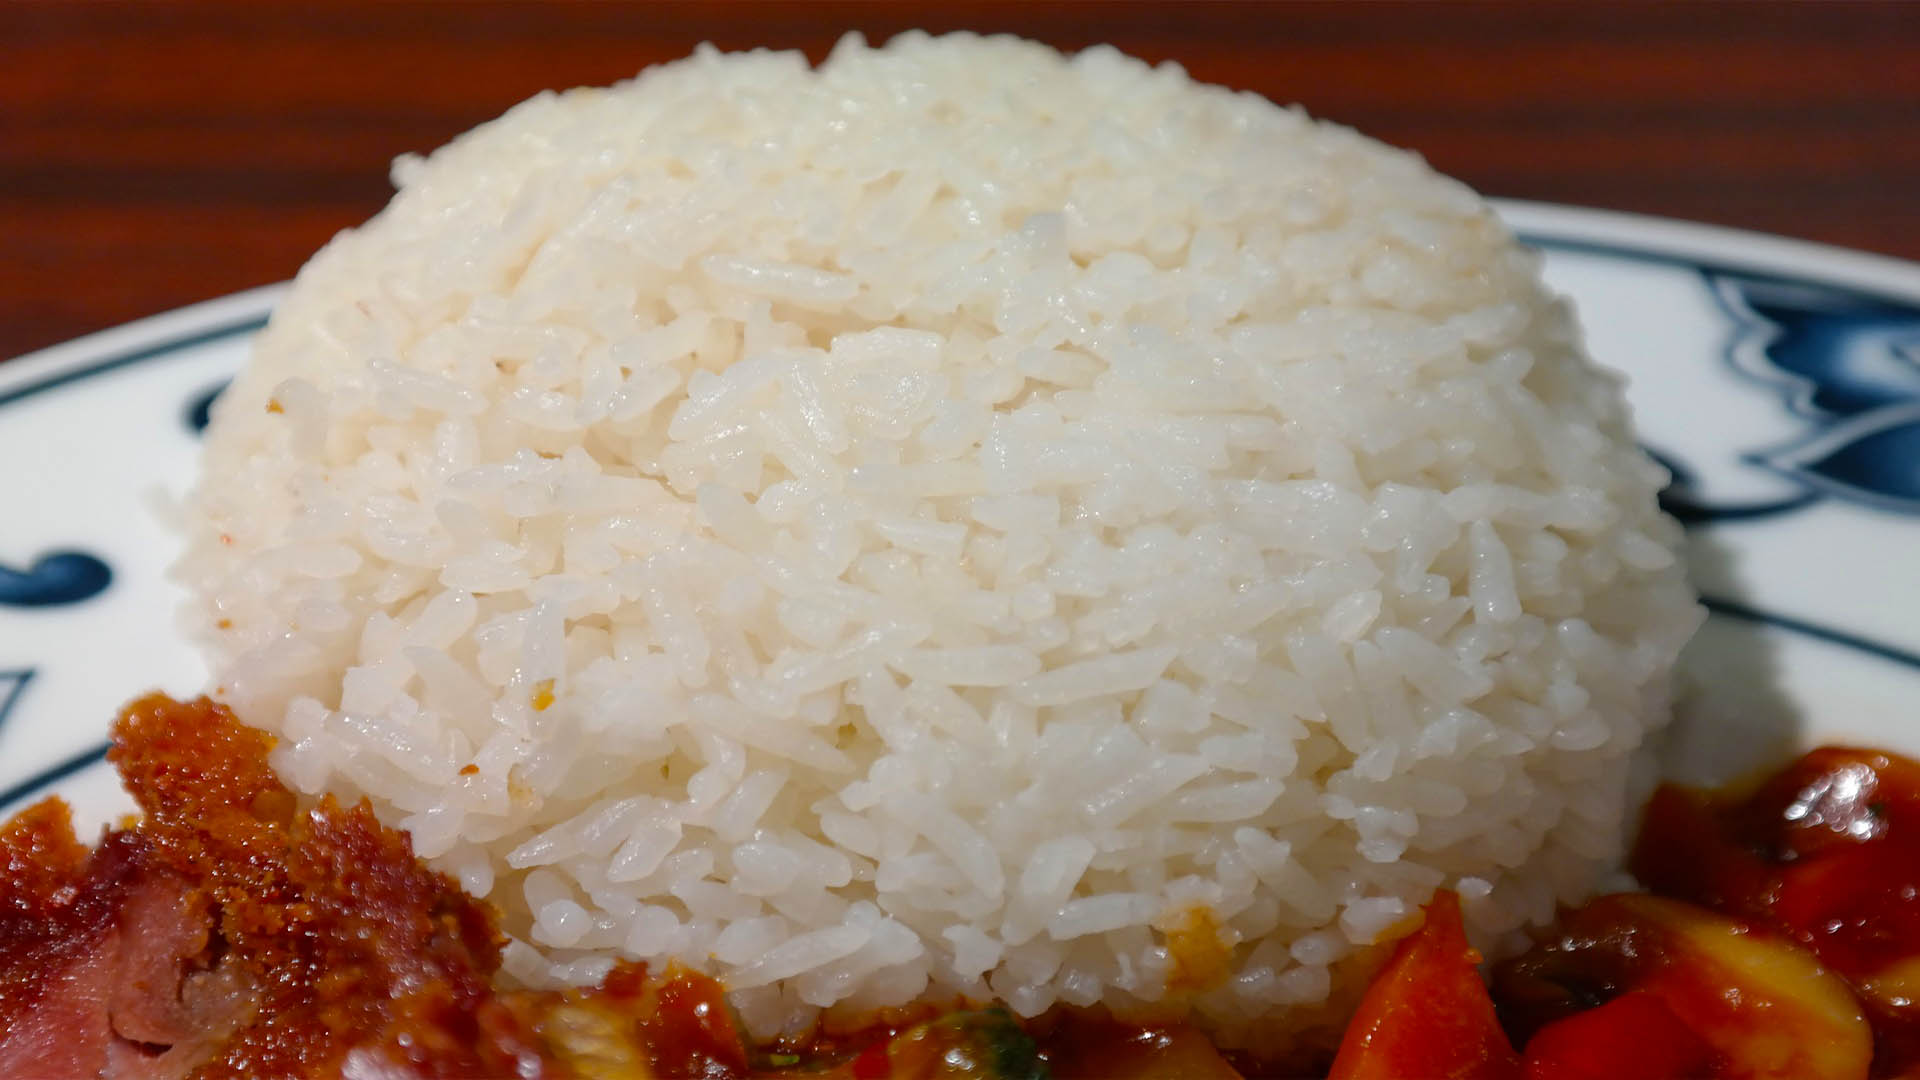 Meddig áll el a főtt rizs hűtőben? Meddig jó a főtt rizs?